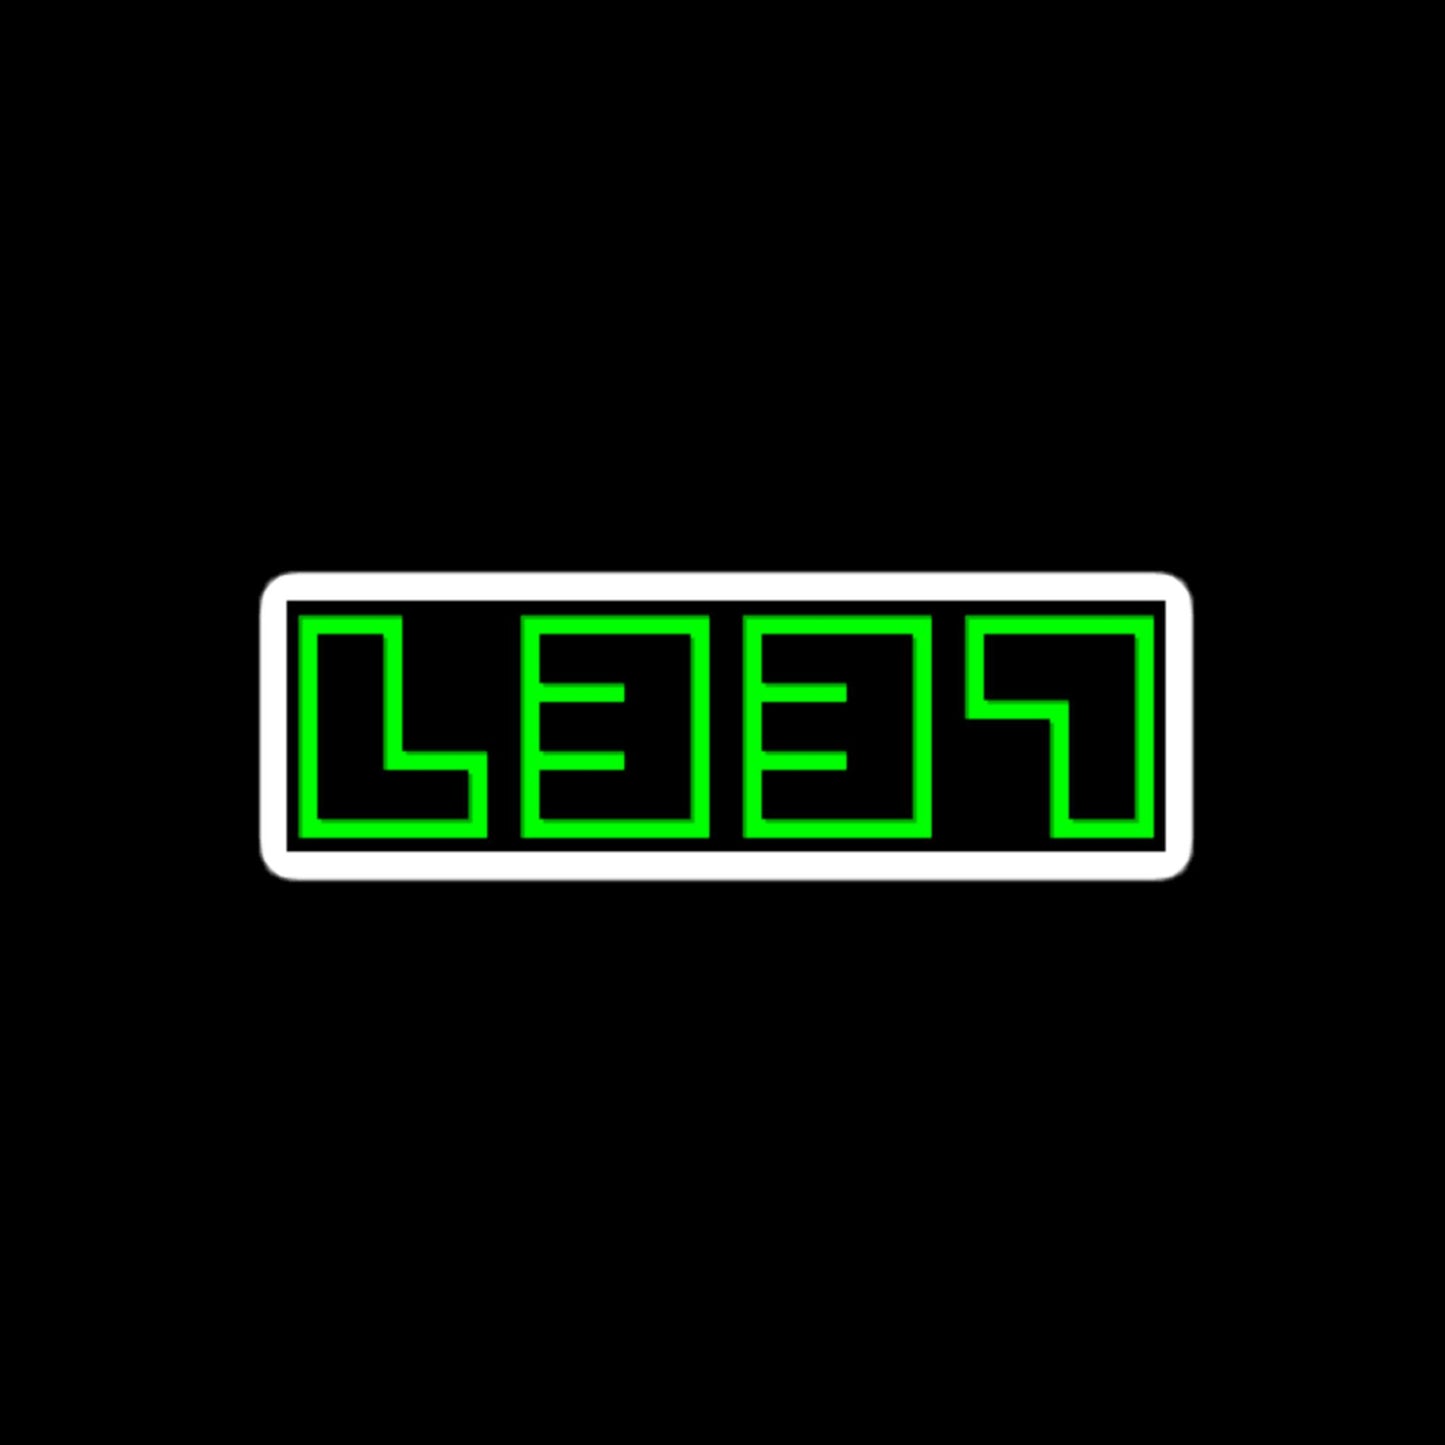 LEET 1337 In Neon Green Stickers